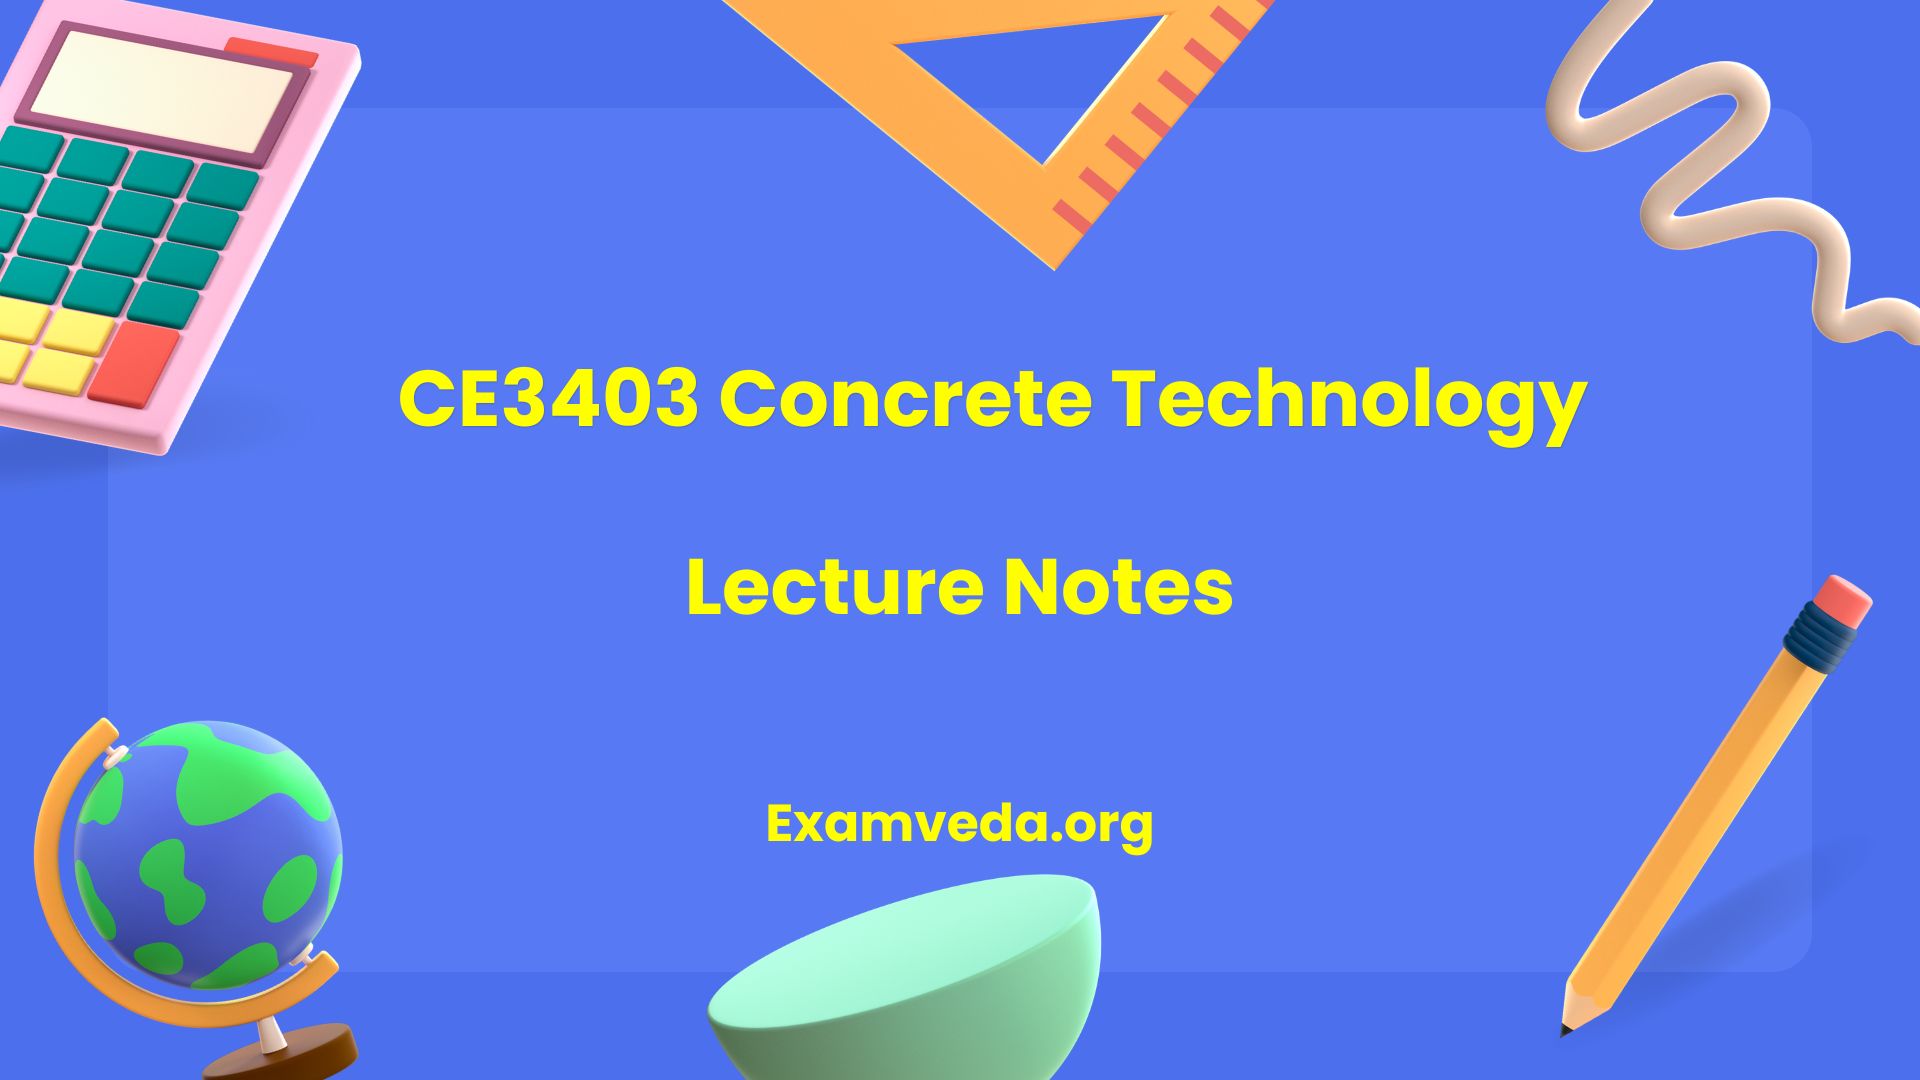 CE3403 Concrete Technology Lecture Notes